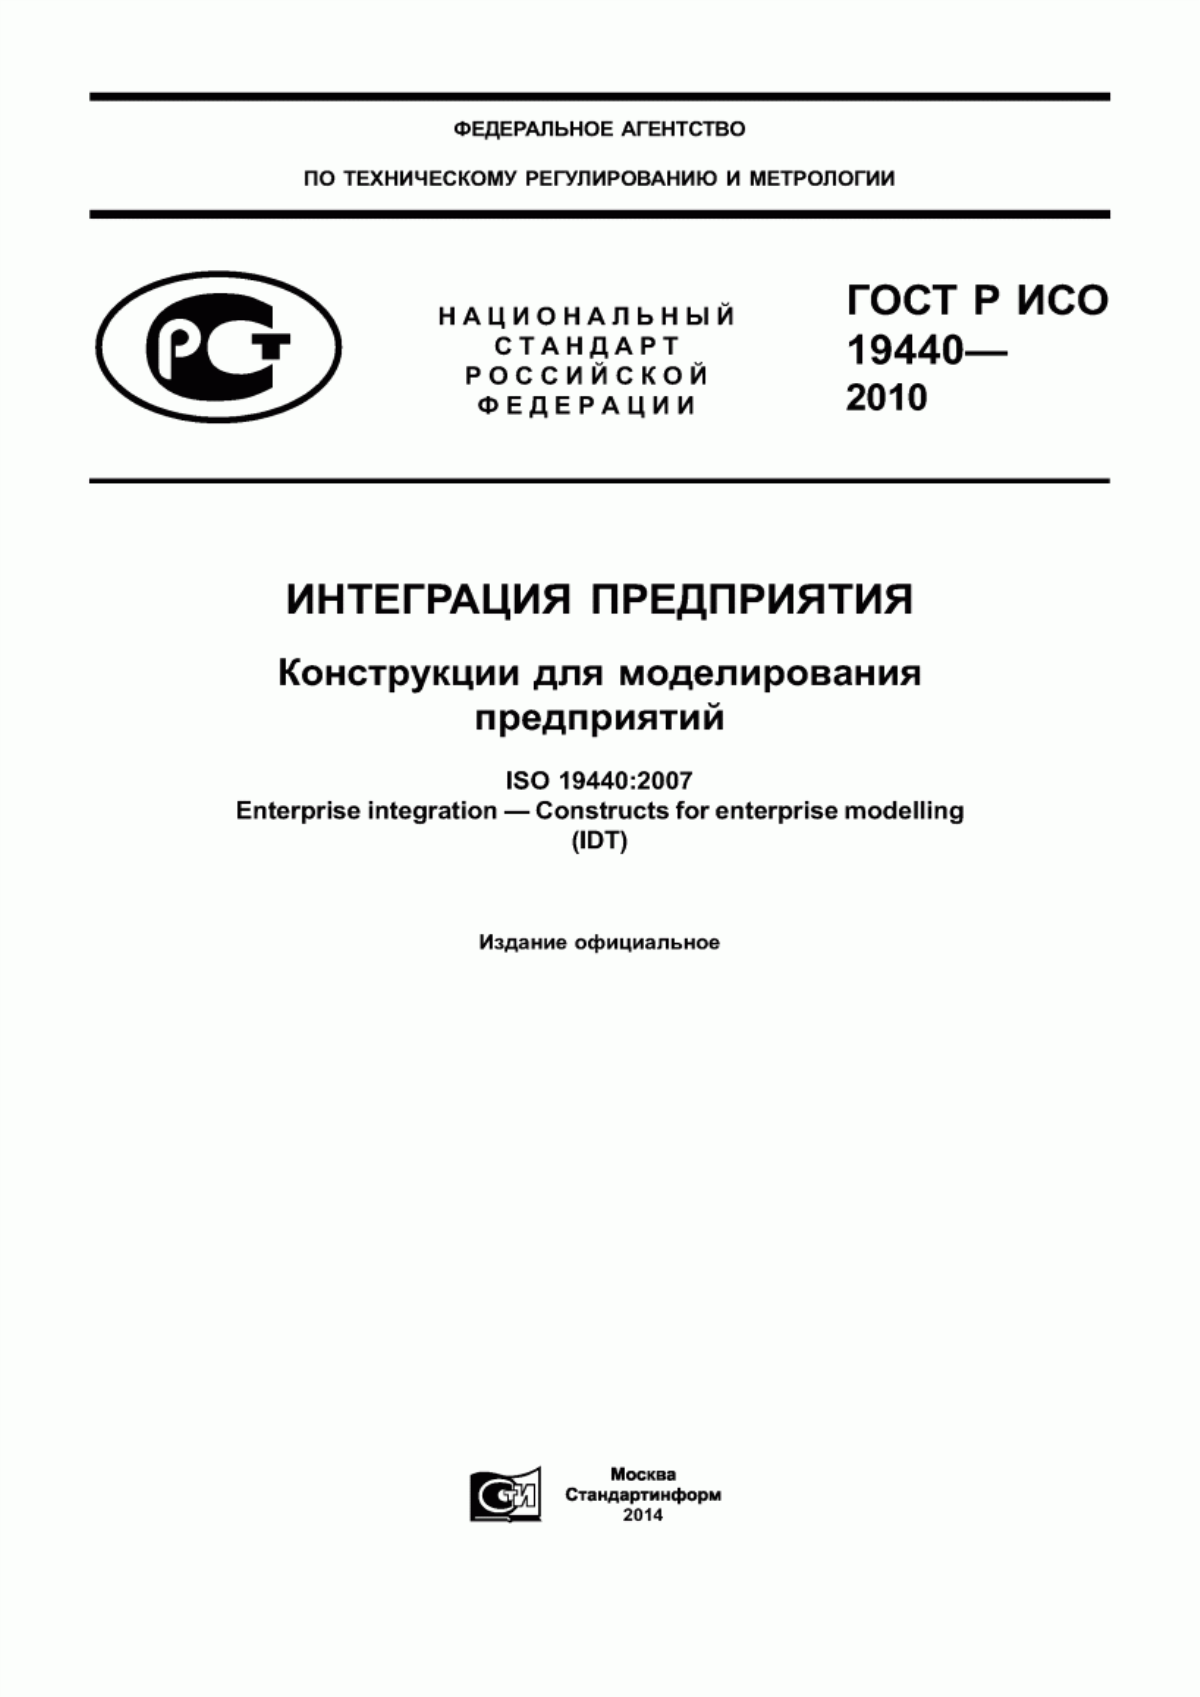 ГОСТ Р ИСО 19440-2010 Интеграция предприятия. Конструкции для моделирования предприятий